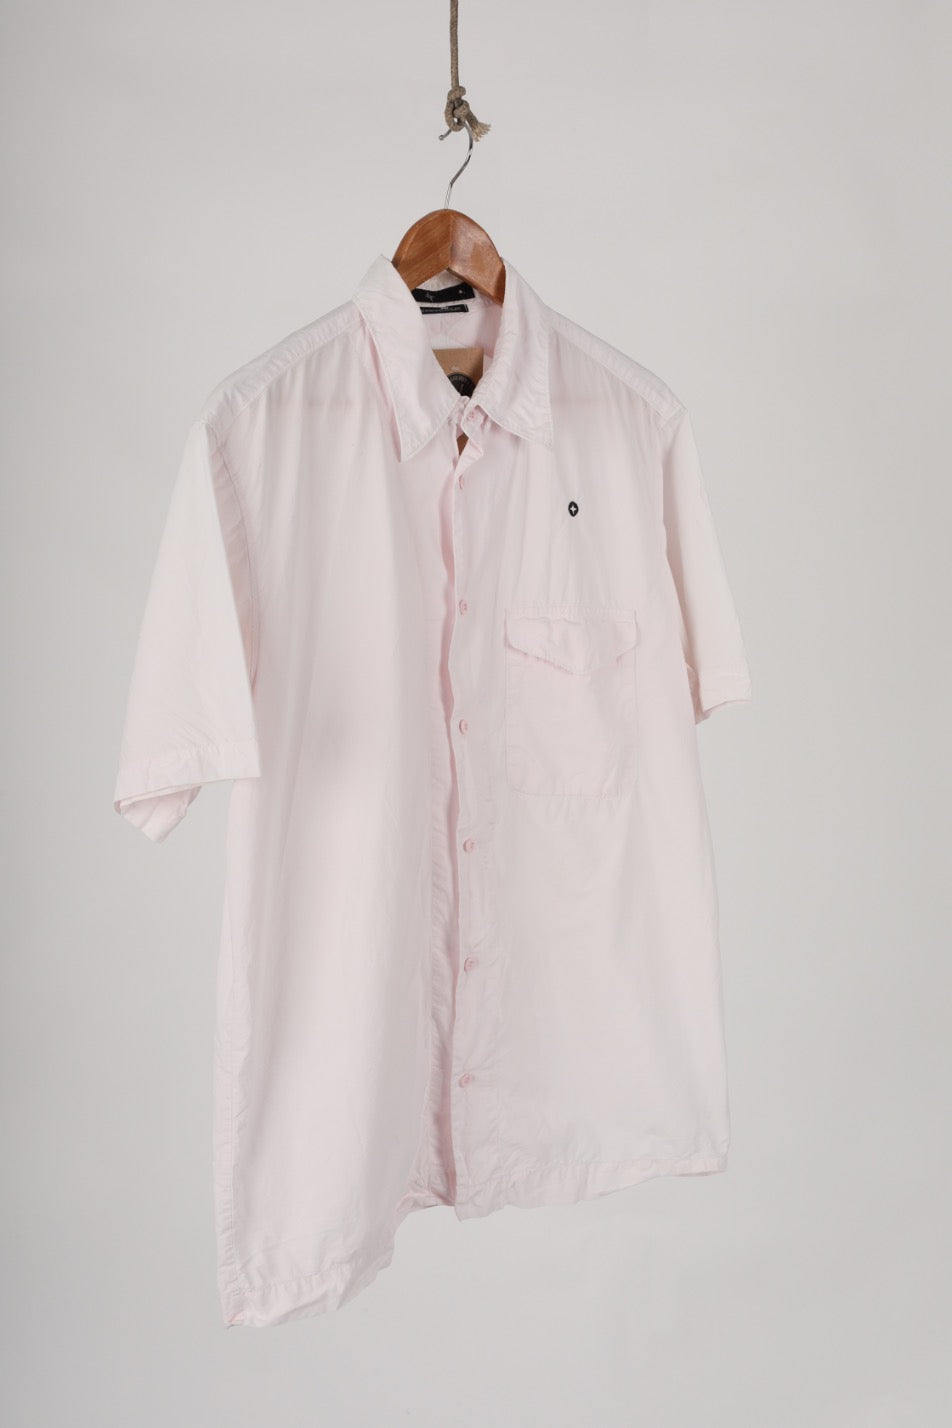 2005 Stone Island Denims Pink short sleeve shirt (L)